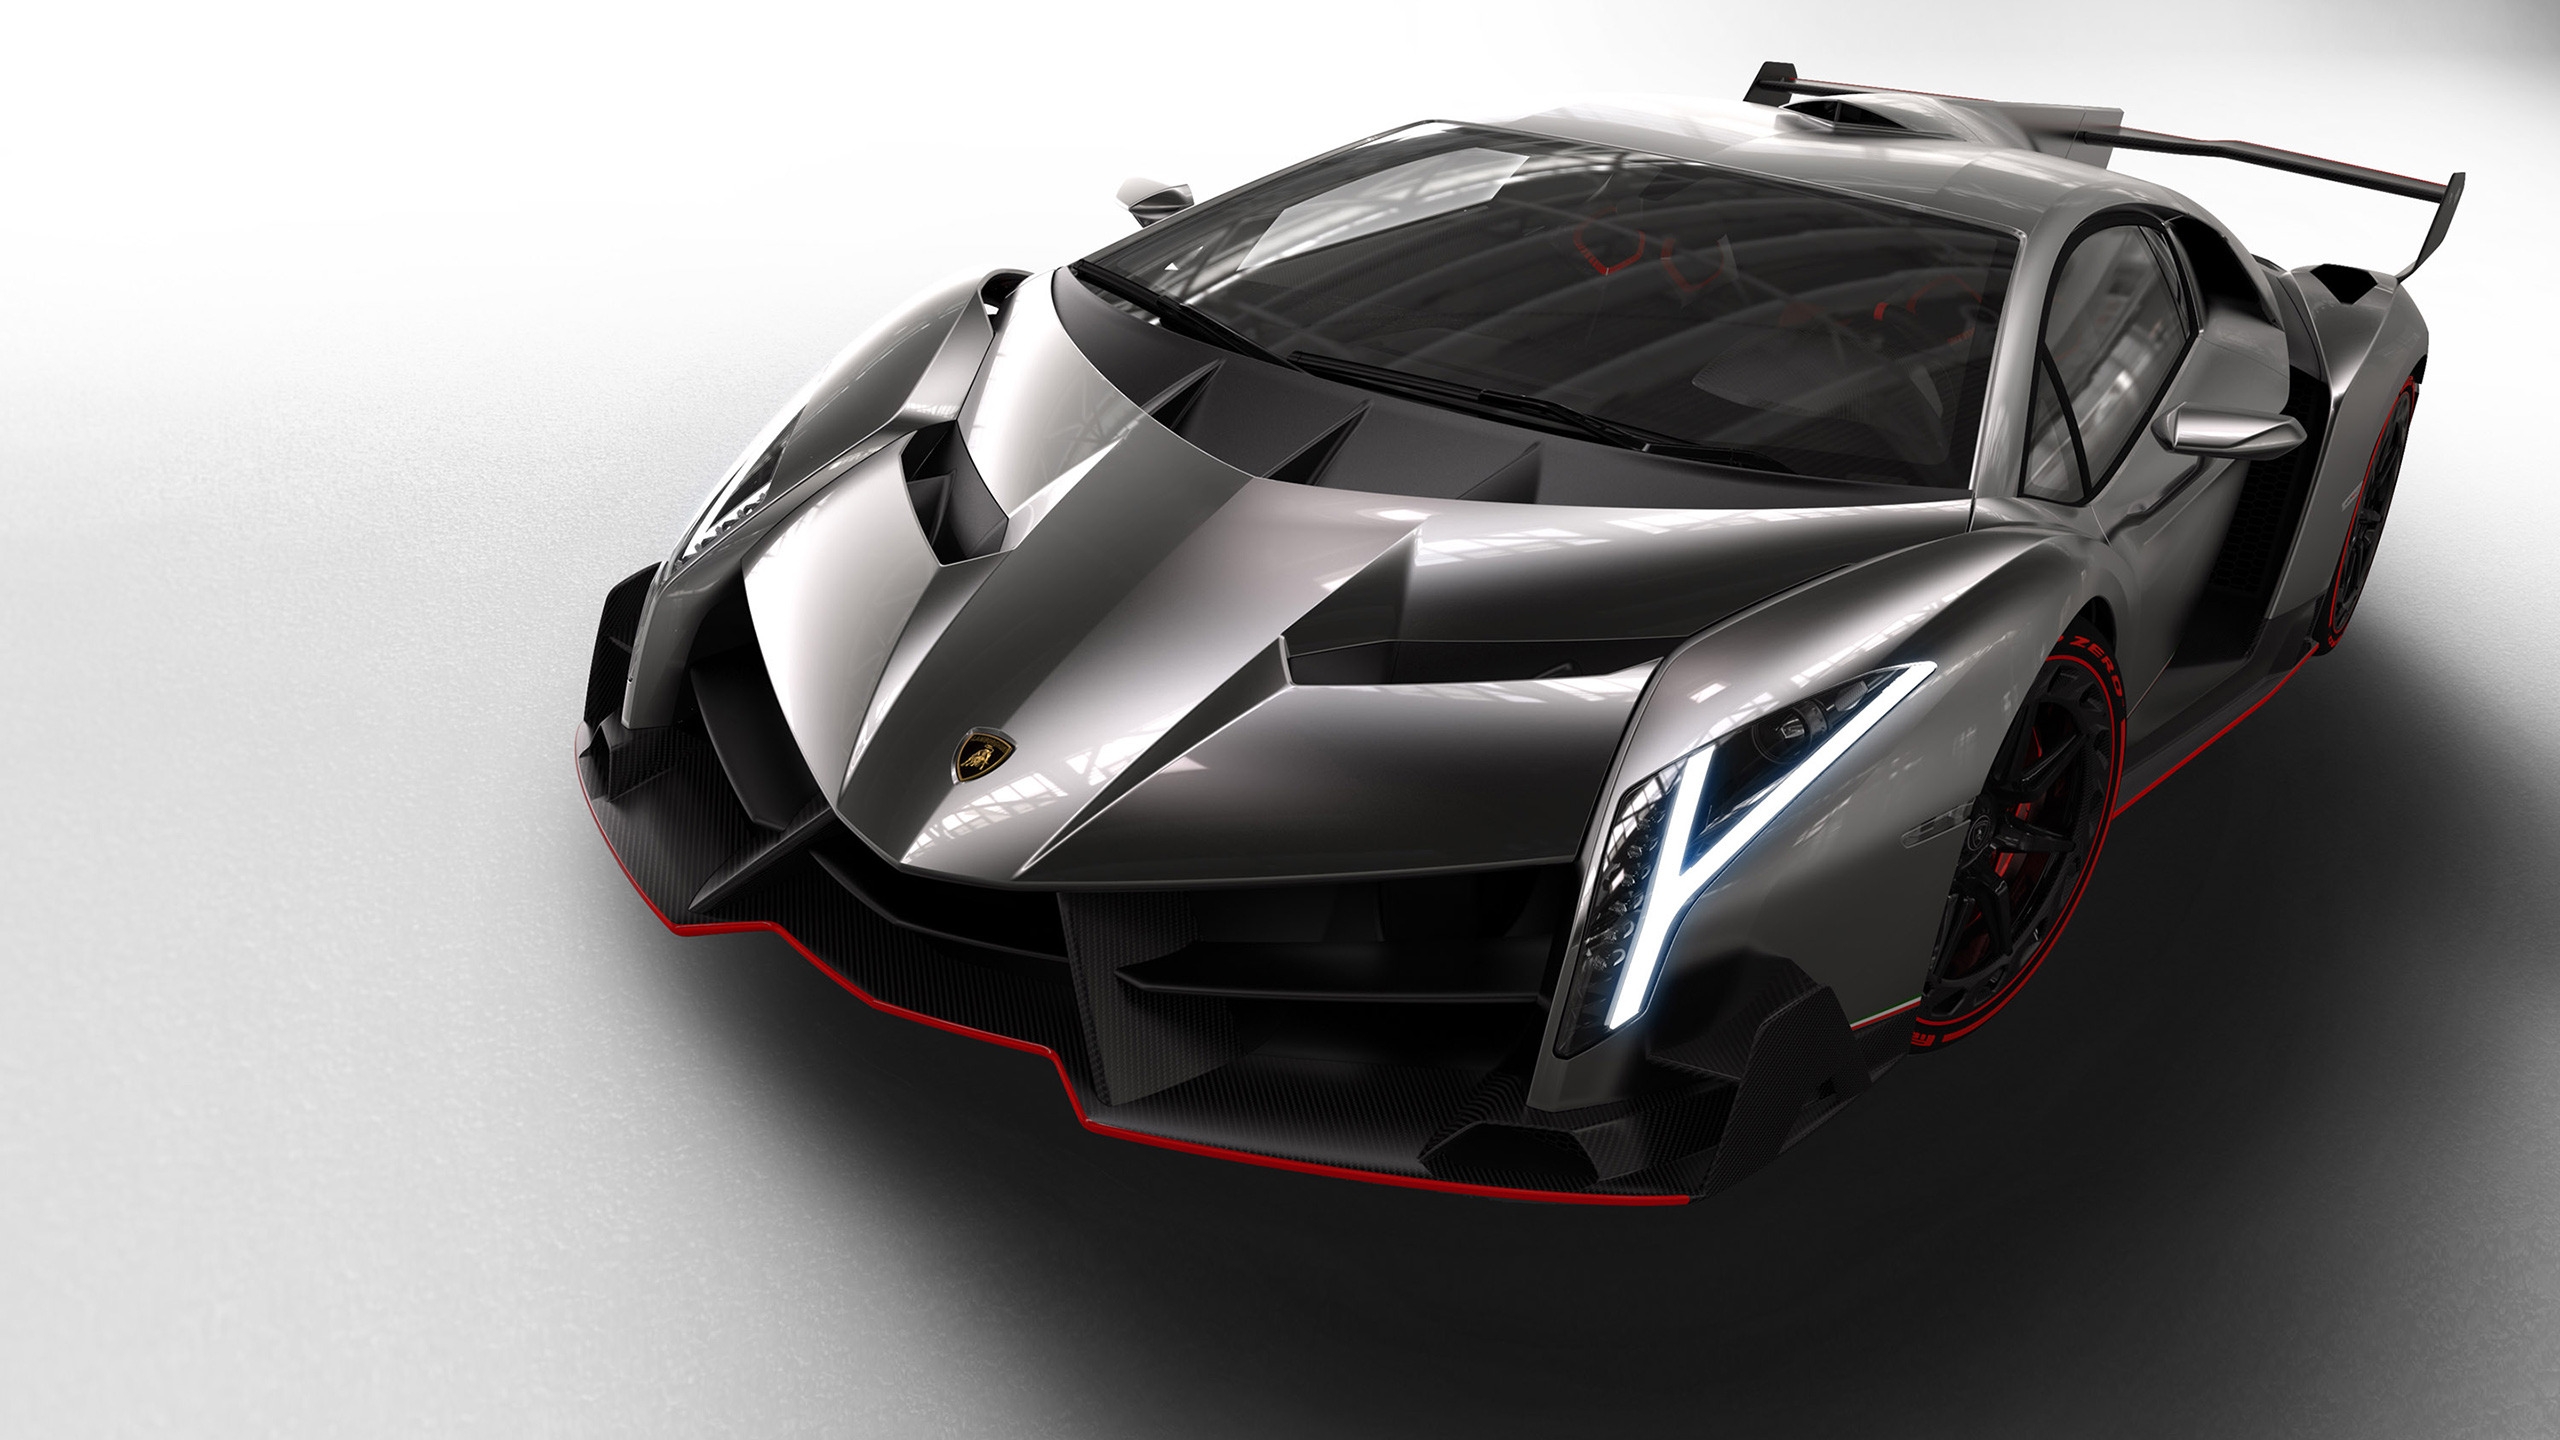 Lamborghini Veneno Studio for 2560x1440 HDTV resolution